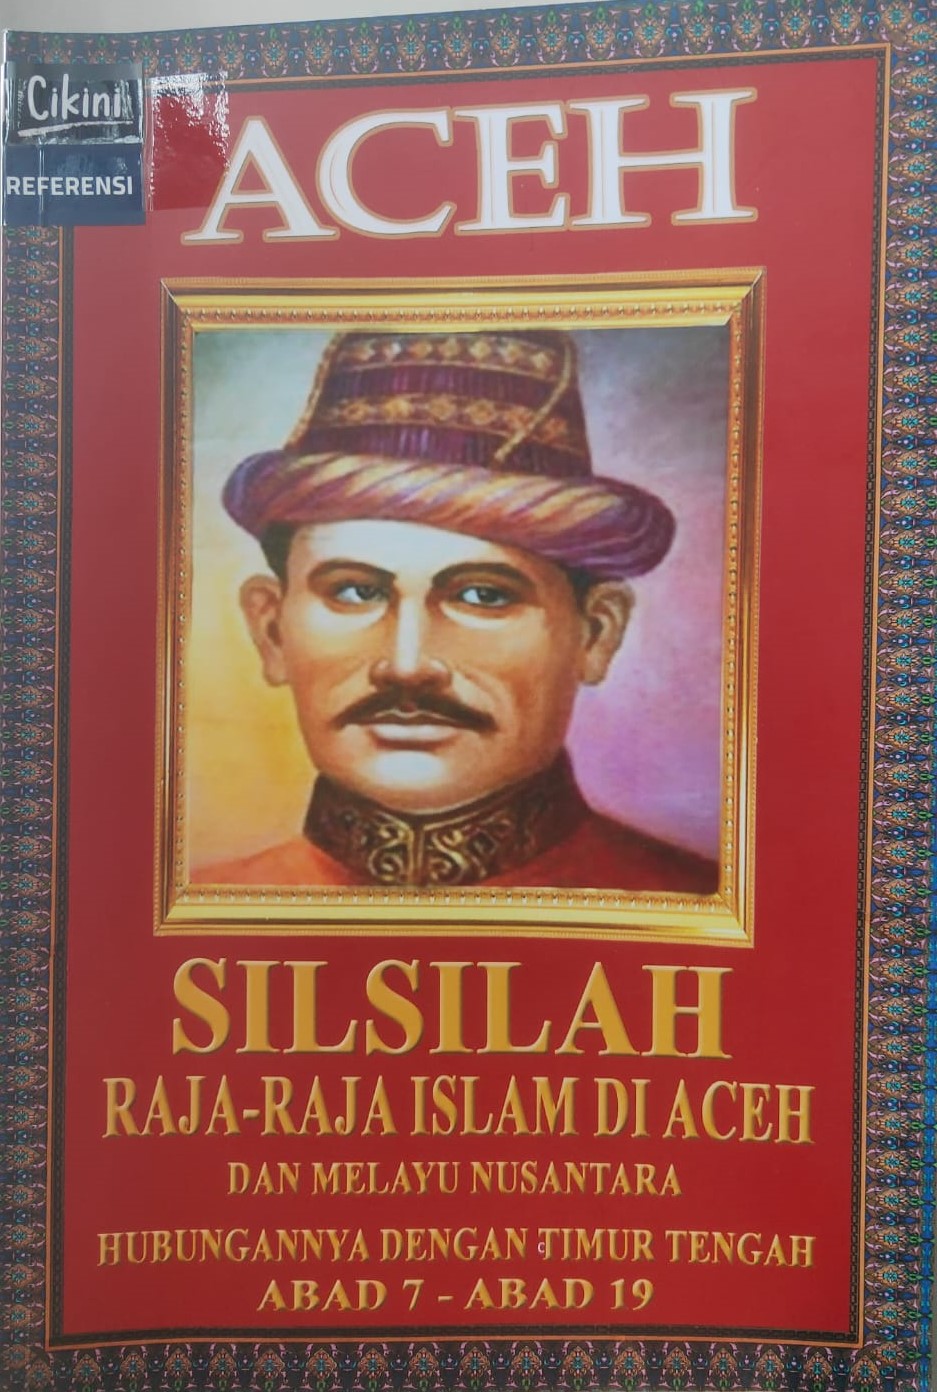 Silsilah Raja-Raja Islam di Aceh hubungannya dengan Raja-Raja Melayu Nusantara